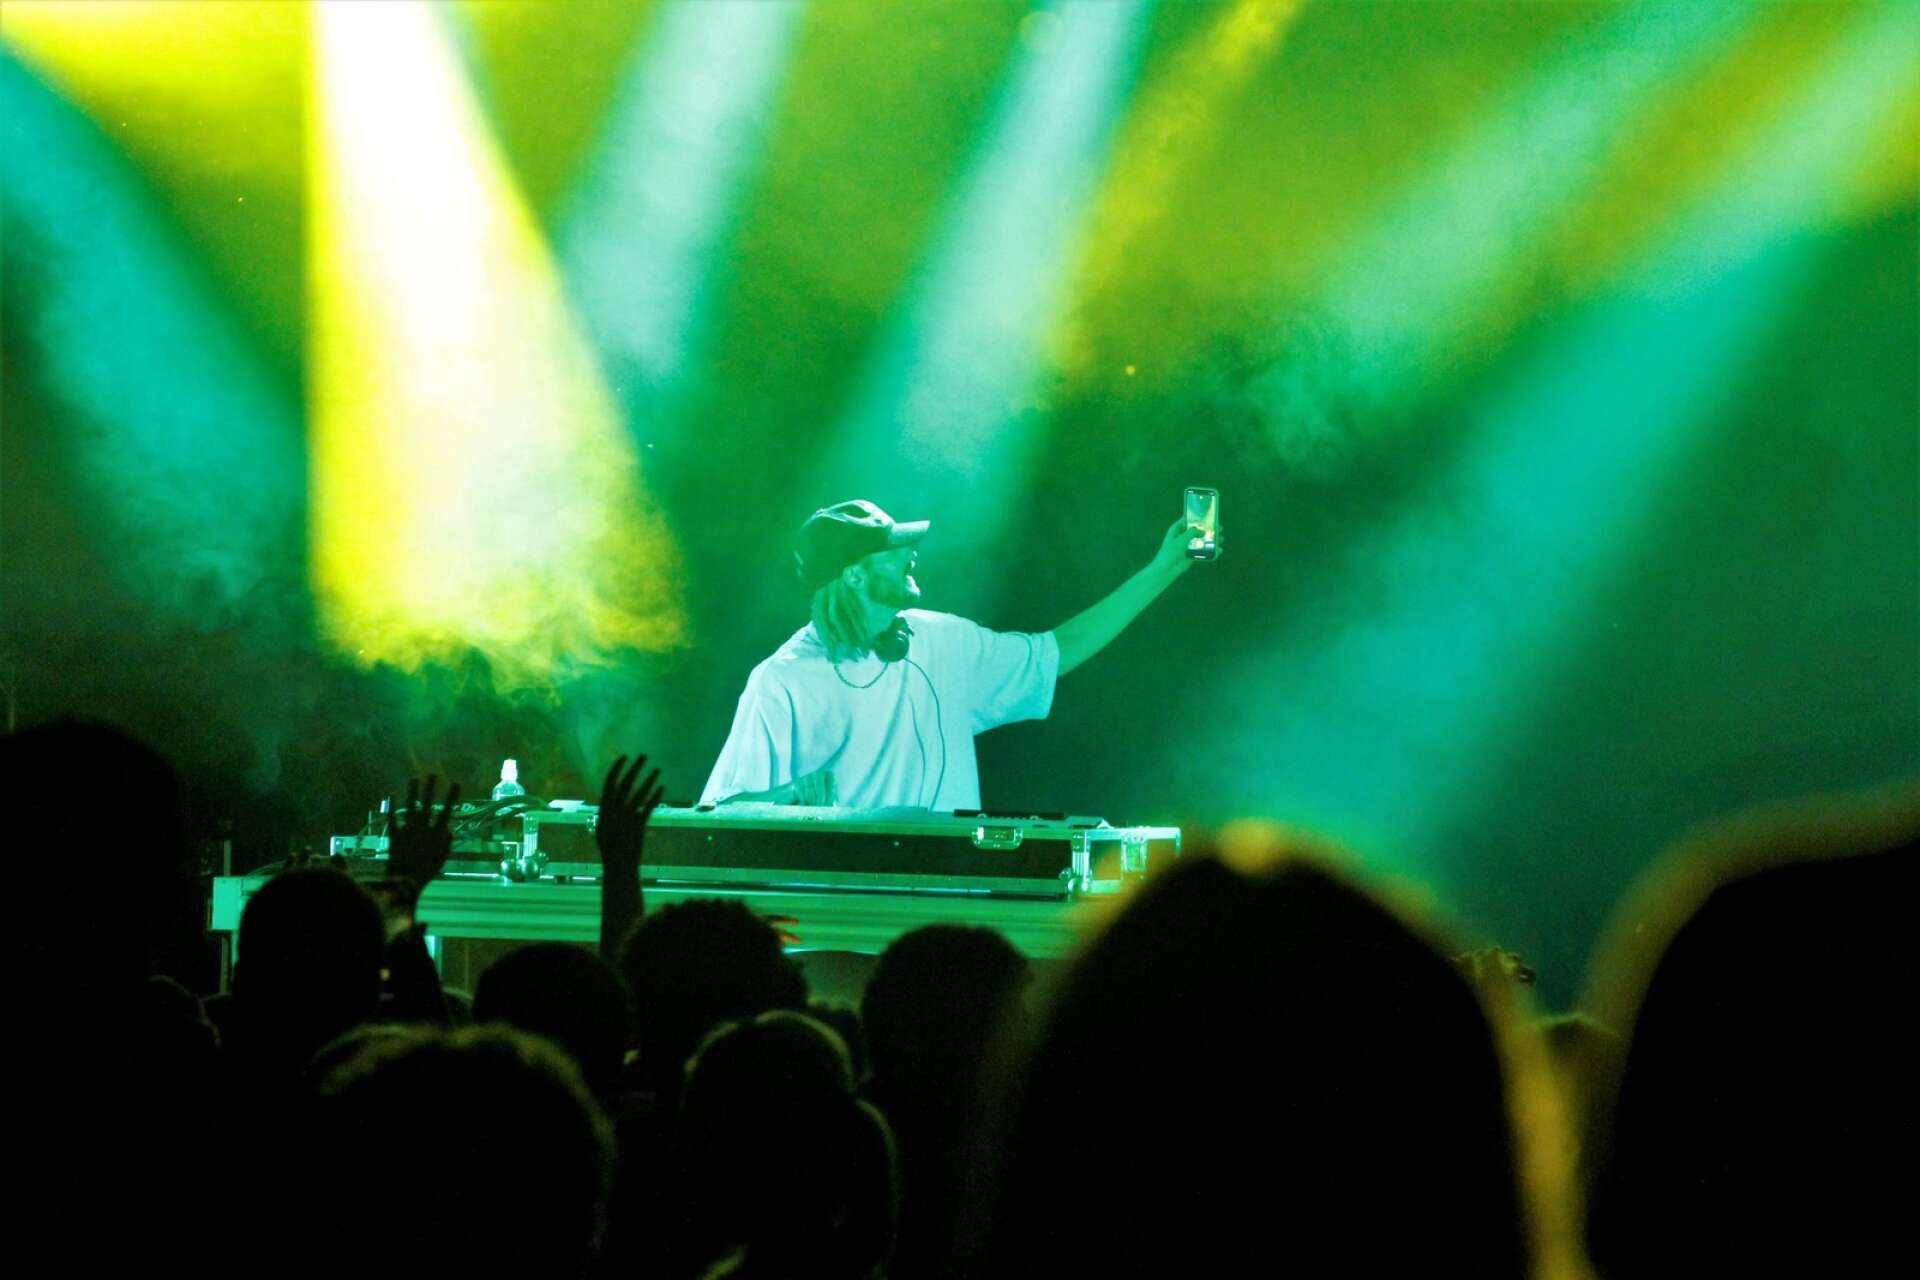 Nause har haft globala framgångar på listor och klubbar med låtar som ”Hungry hearts” och ”Dynamite”och haft hundratals miljoner lyssningar på Spotify. Bakom DJ-, electro- och houseakten Nause står Jacob Criborn.